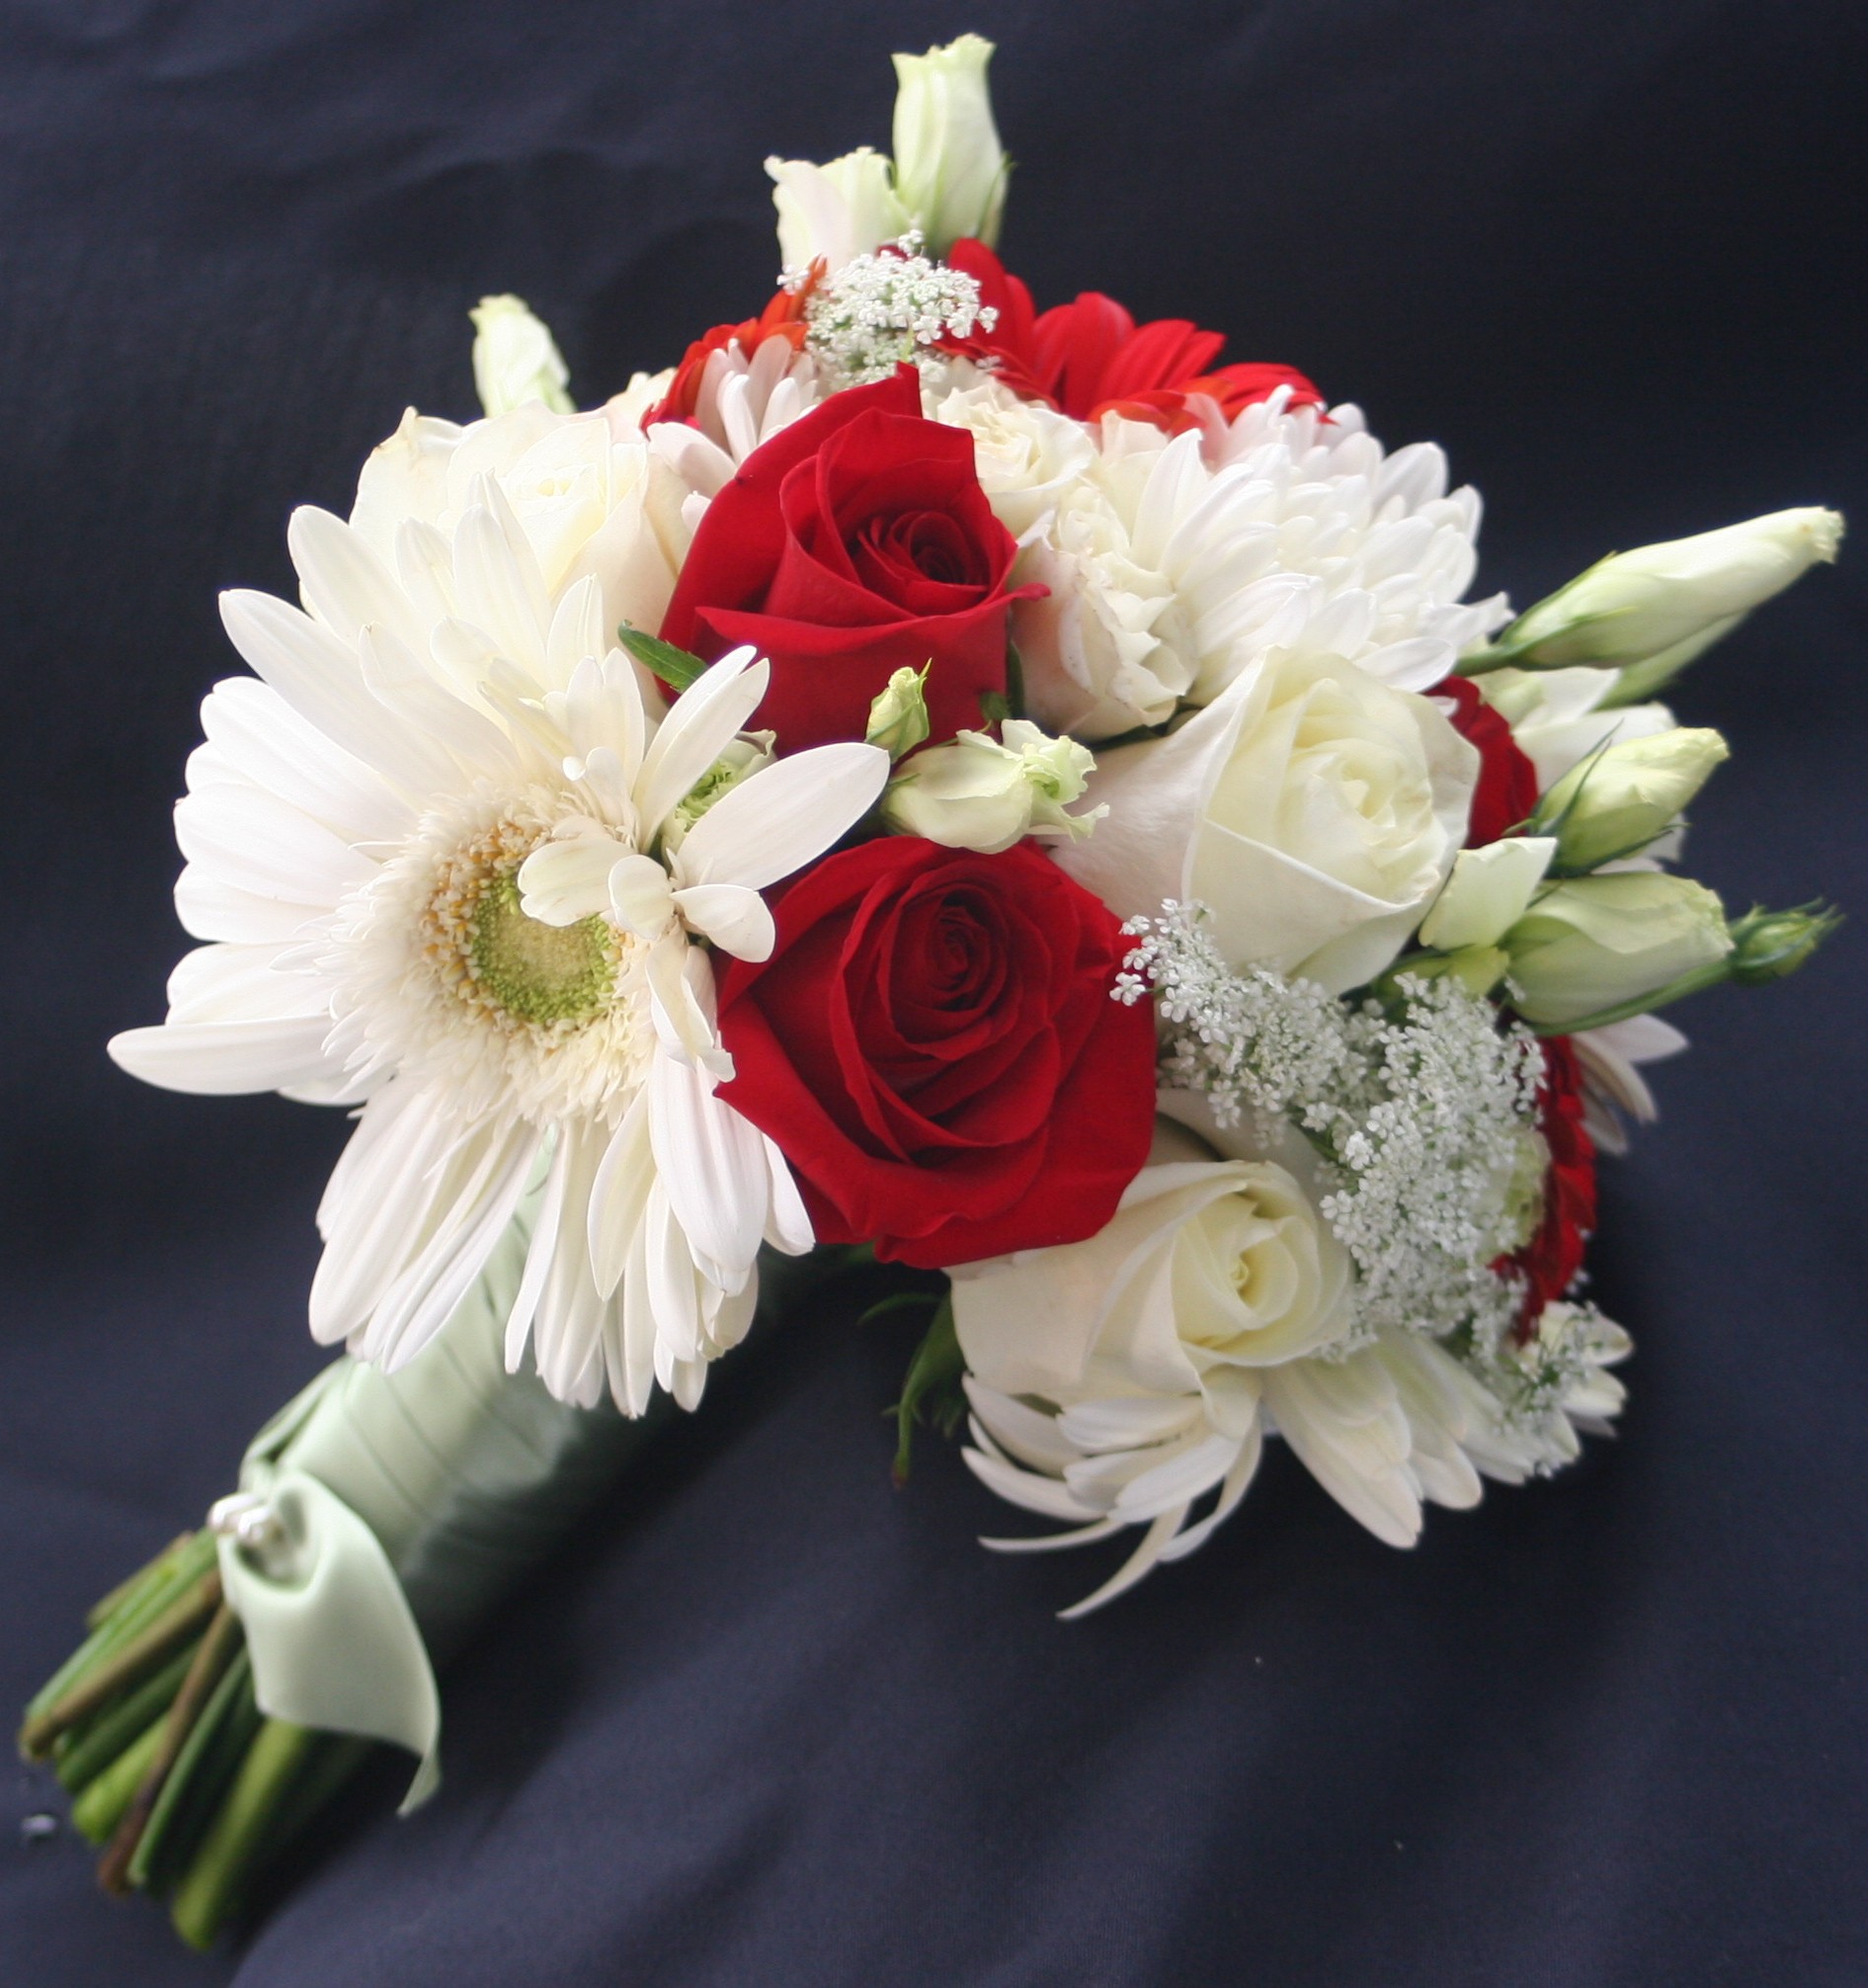 ورد أحمر وابيض حب رومانسي زهور الزفاف الحمراء والبيضاء صور ورد